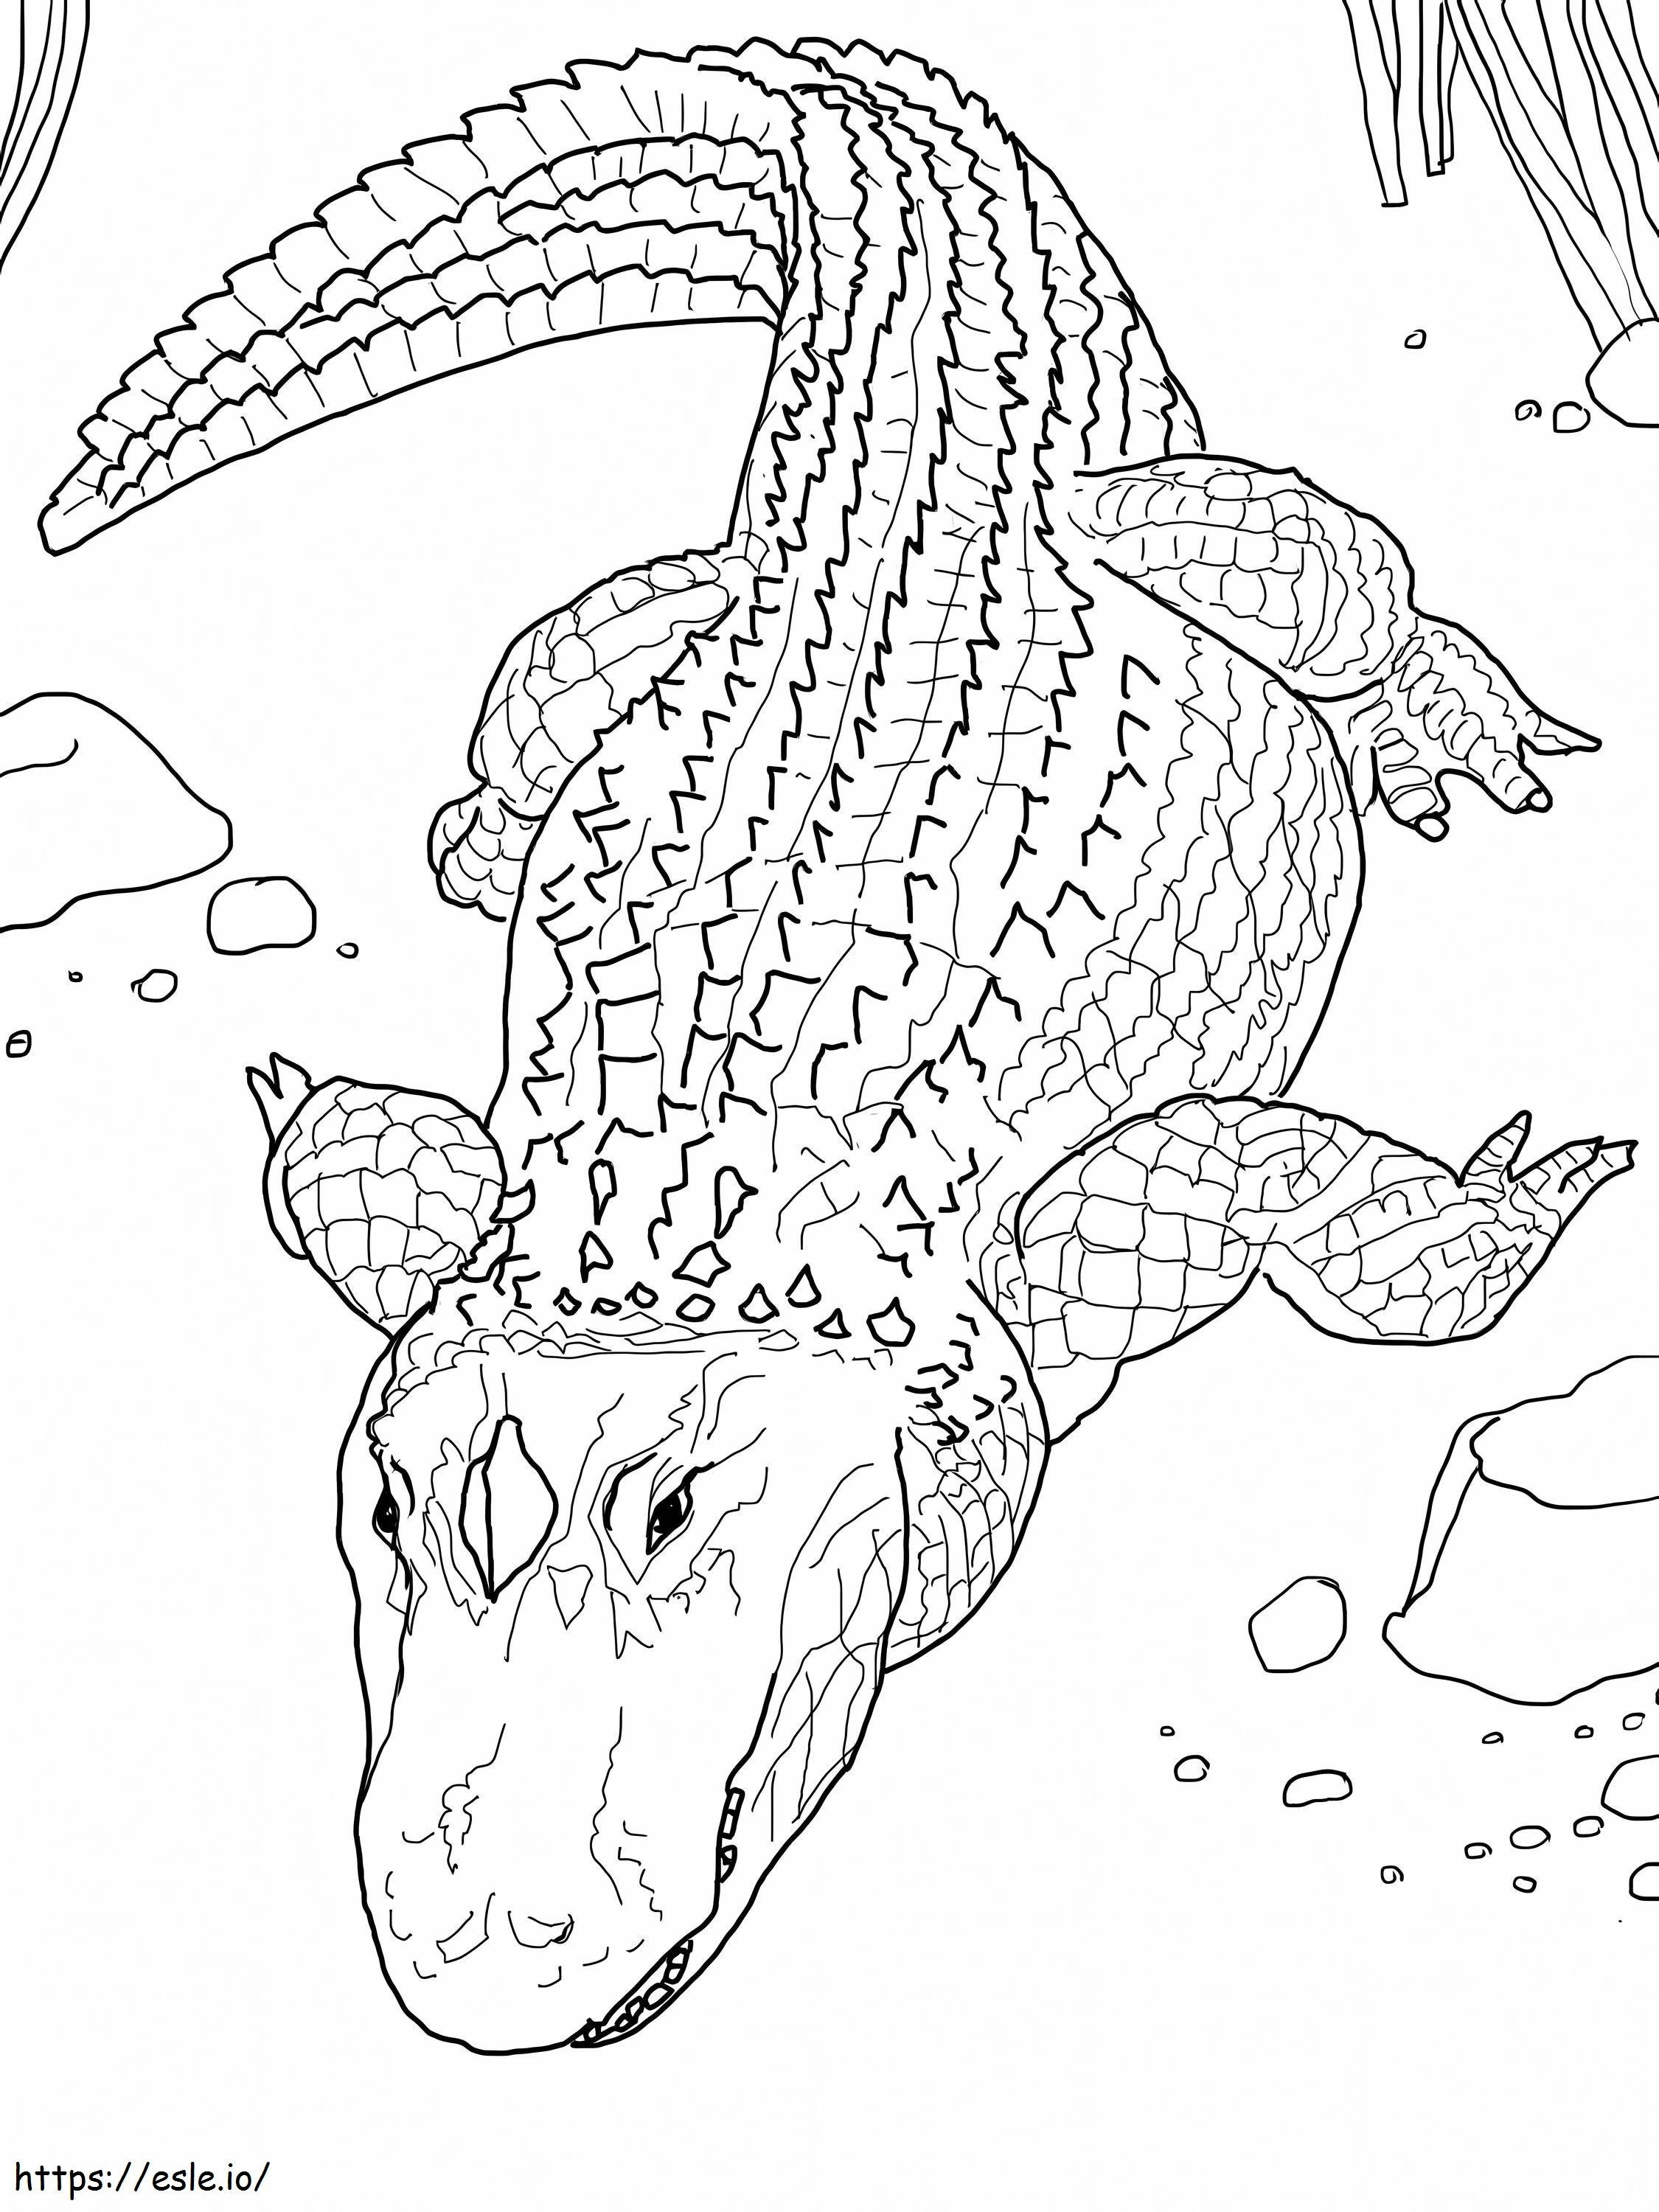 Coloriage Images gratuites de crocodiles à imprimer dessin